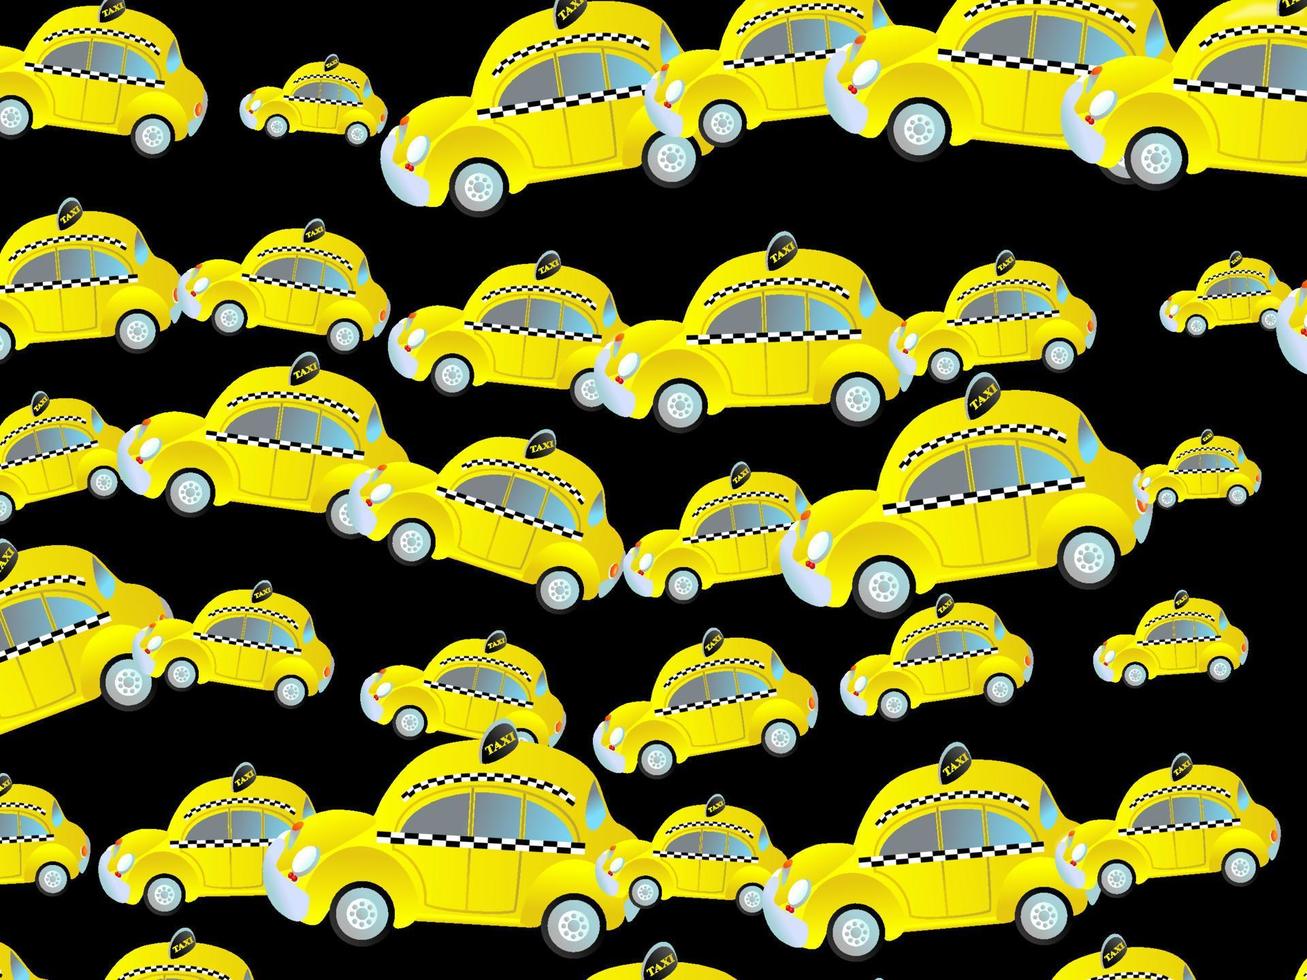 generisches gelbes Taxi Stau Wallpaper vektor